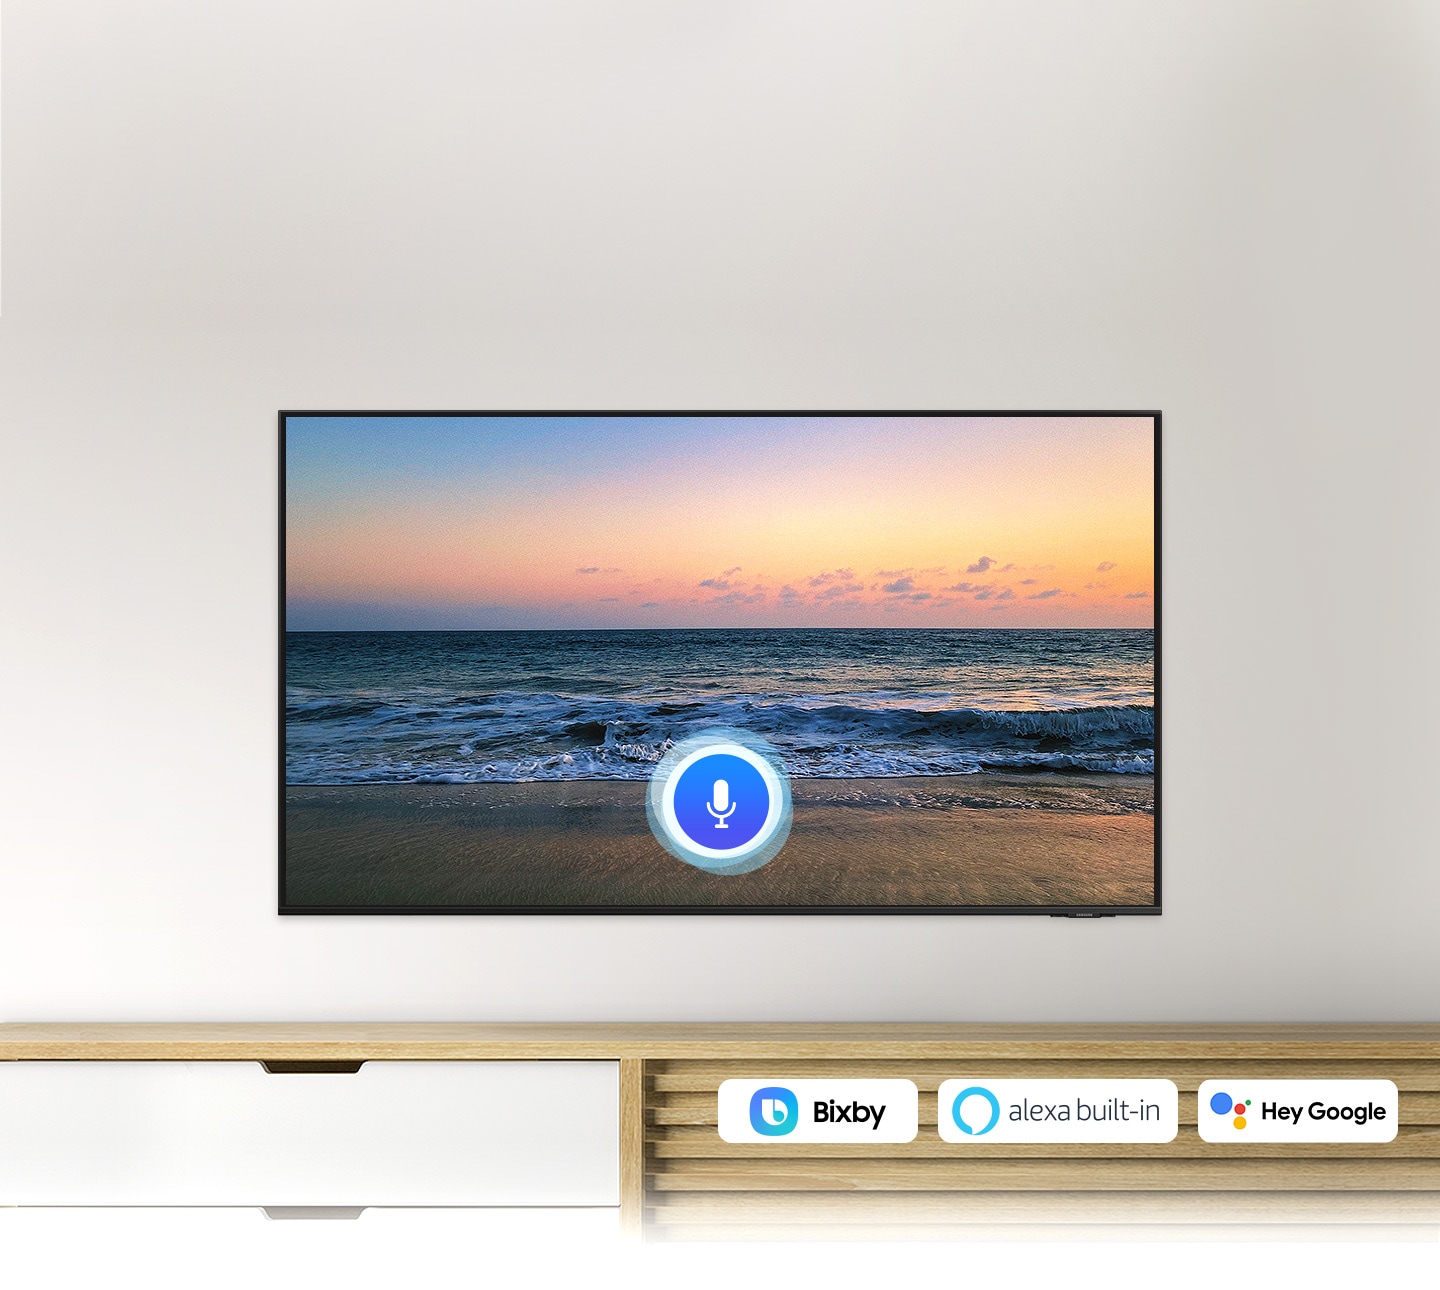 Biểu tượng micrô bao phủ hình ảnh màn hình TV lúc hoàng hôn trên bãi biển, tượng trưng cho chức năng trợ lý giọng nói của TV Ultra HD.